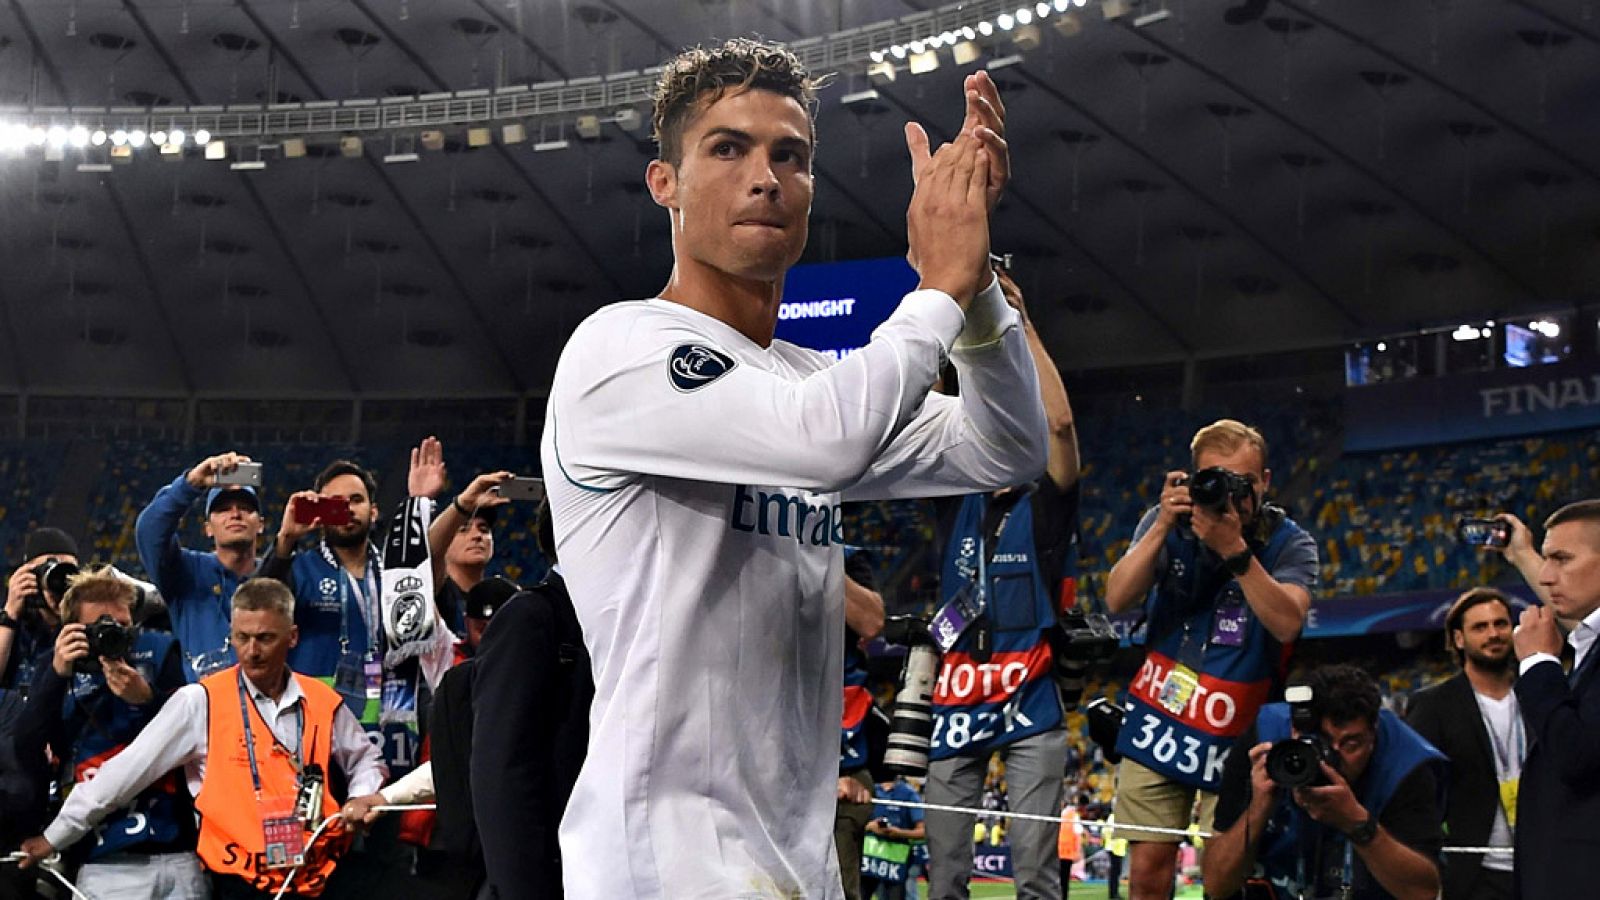 El portugués Cristiano Ronaldo dejó un mensaje que sonó a  despedida al asegurar que "fue muy bonito estar en el Real Madrid",  que ahora solo hay que "disfrutar este momento" y que en los próximos  días dará "una respuesta a los aficionados", despué